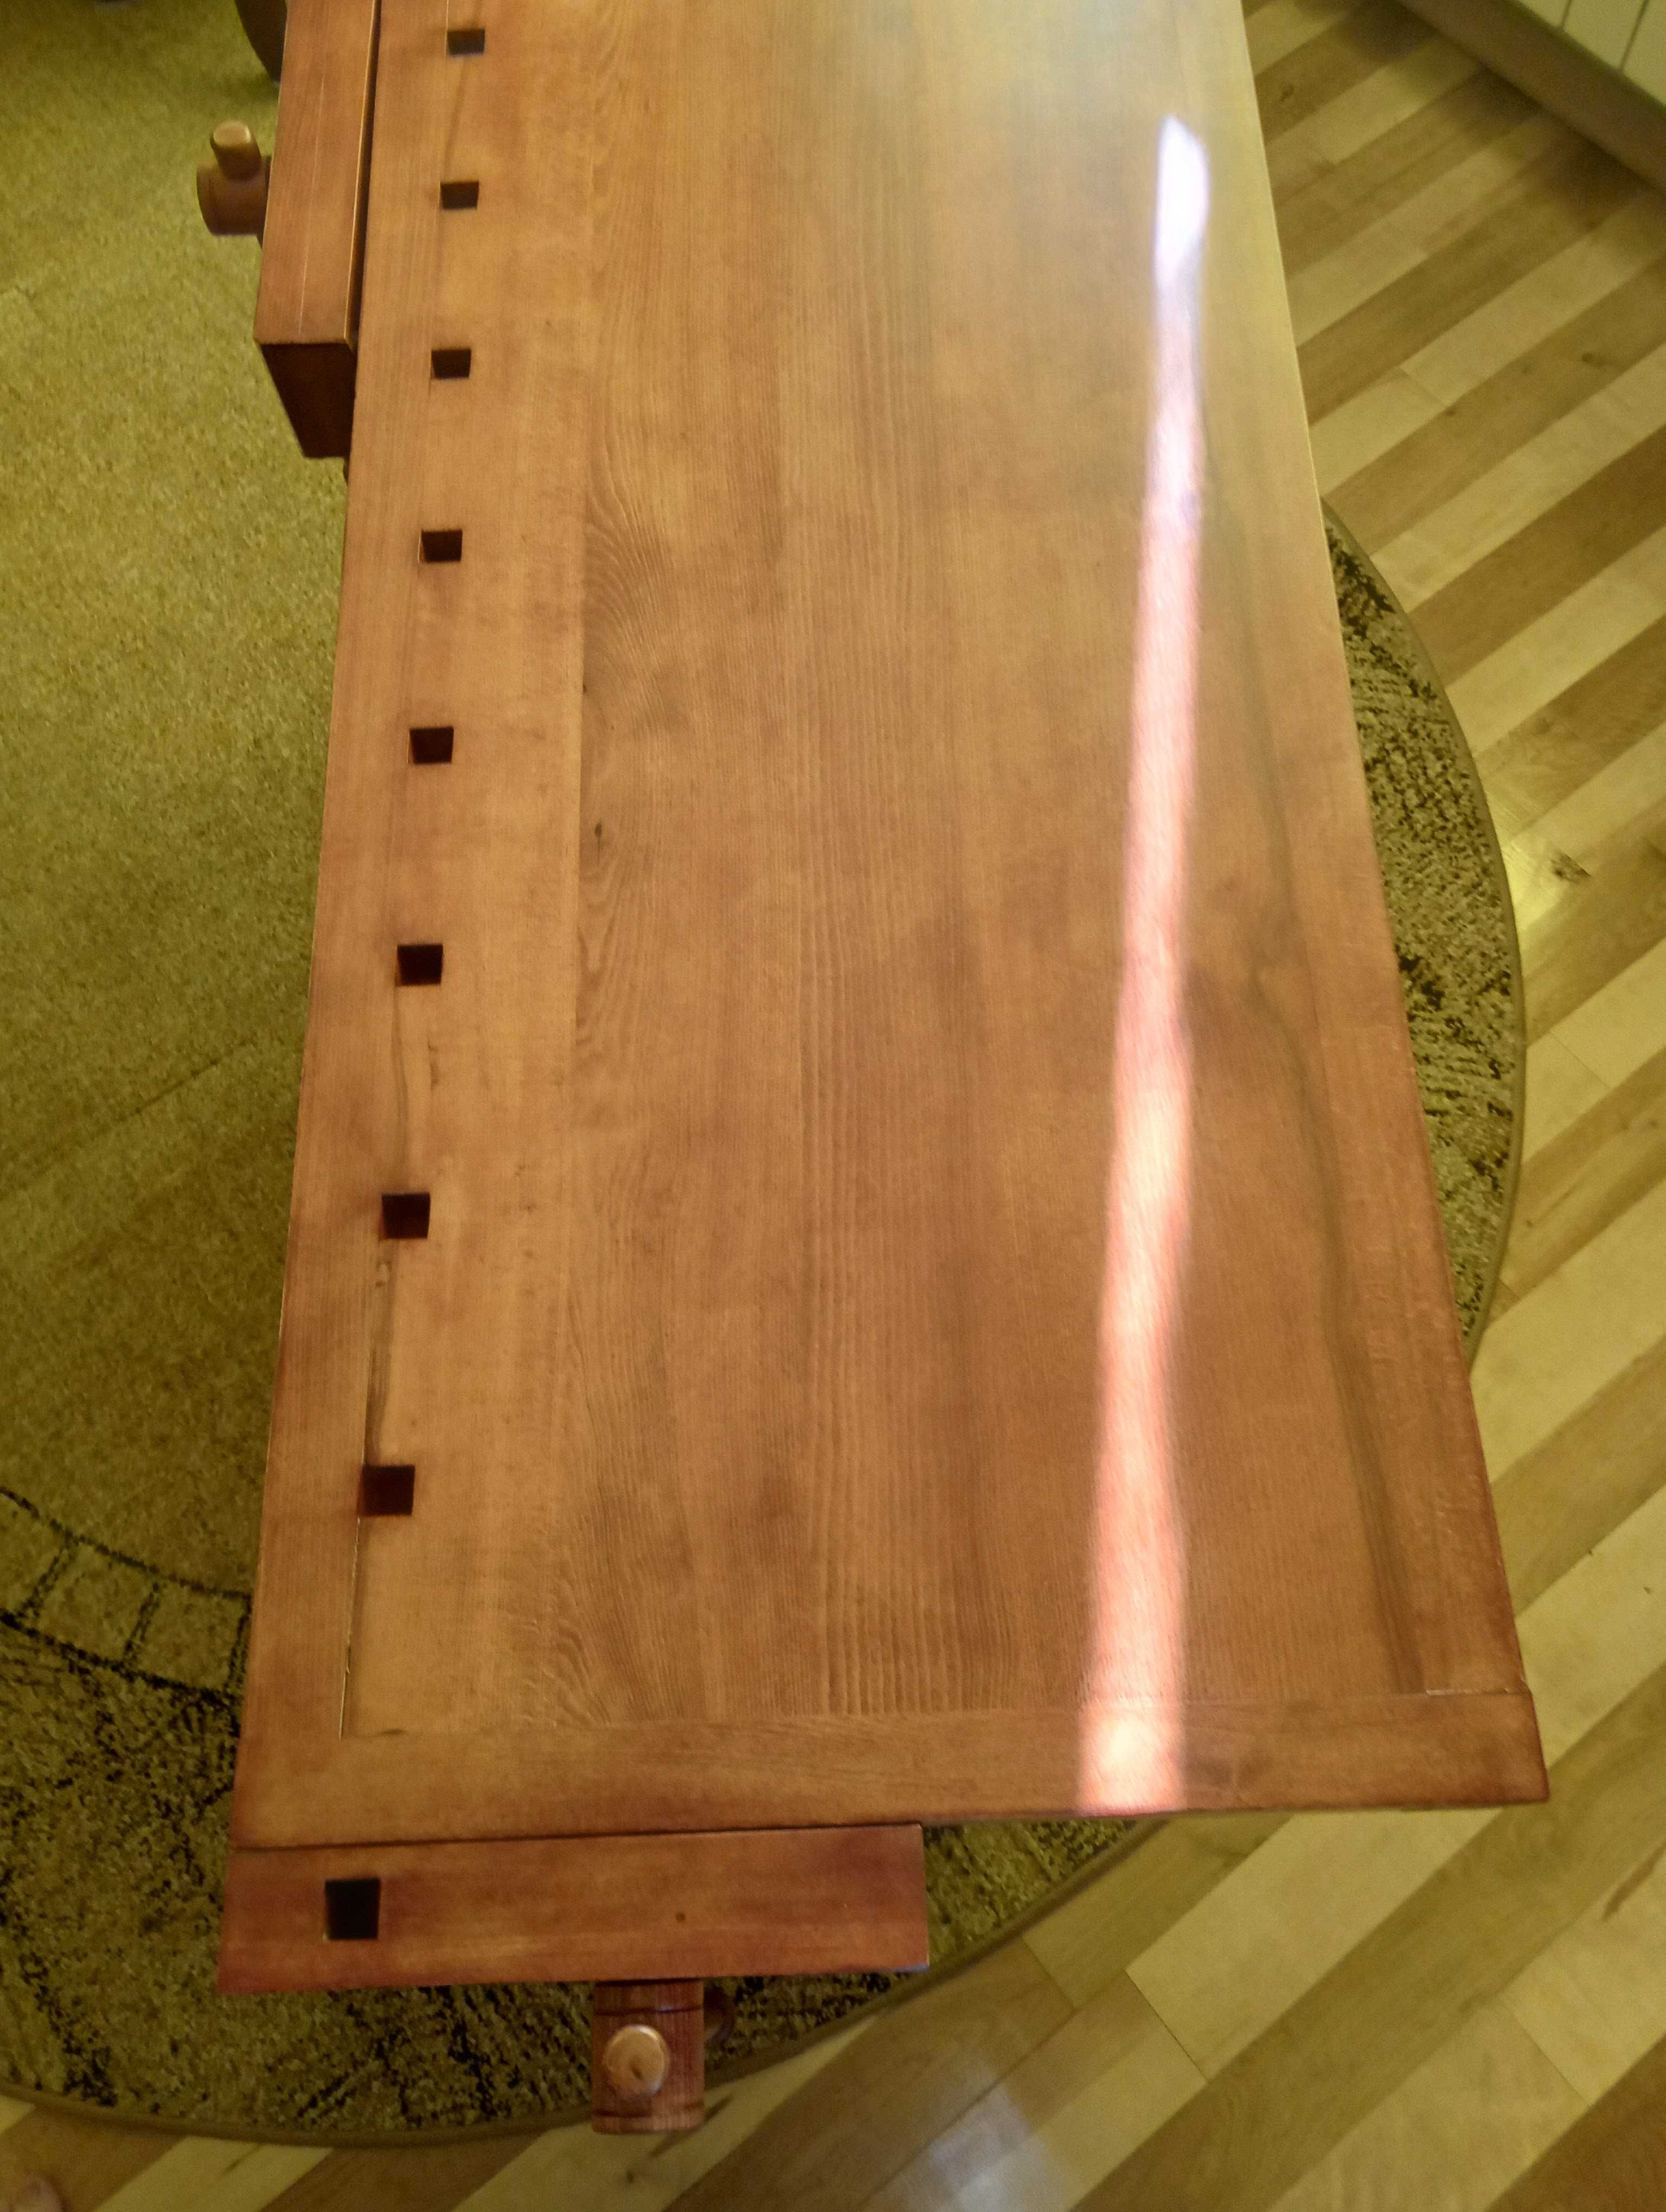 Stół rustykalny w stylu starych warsztatów stolarskich.